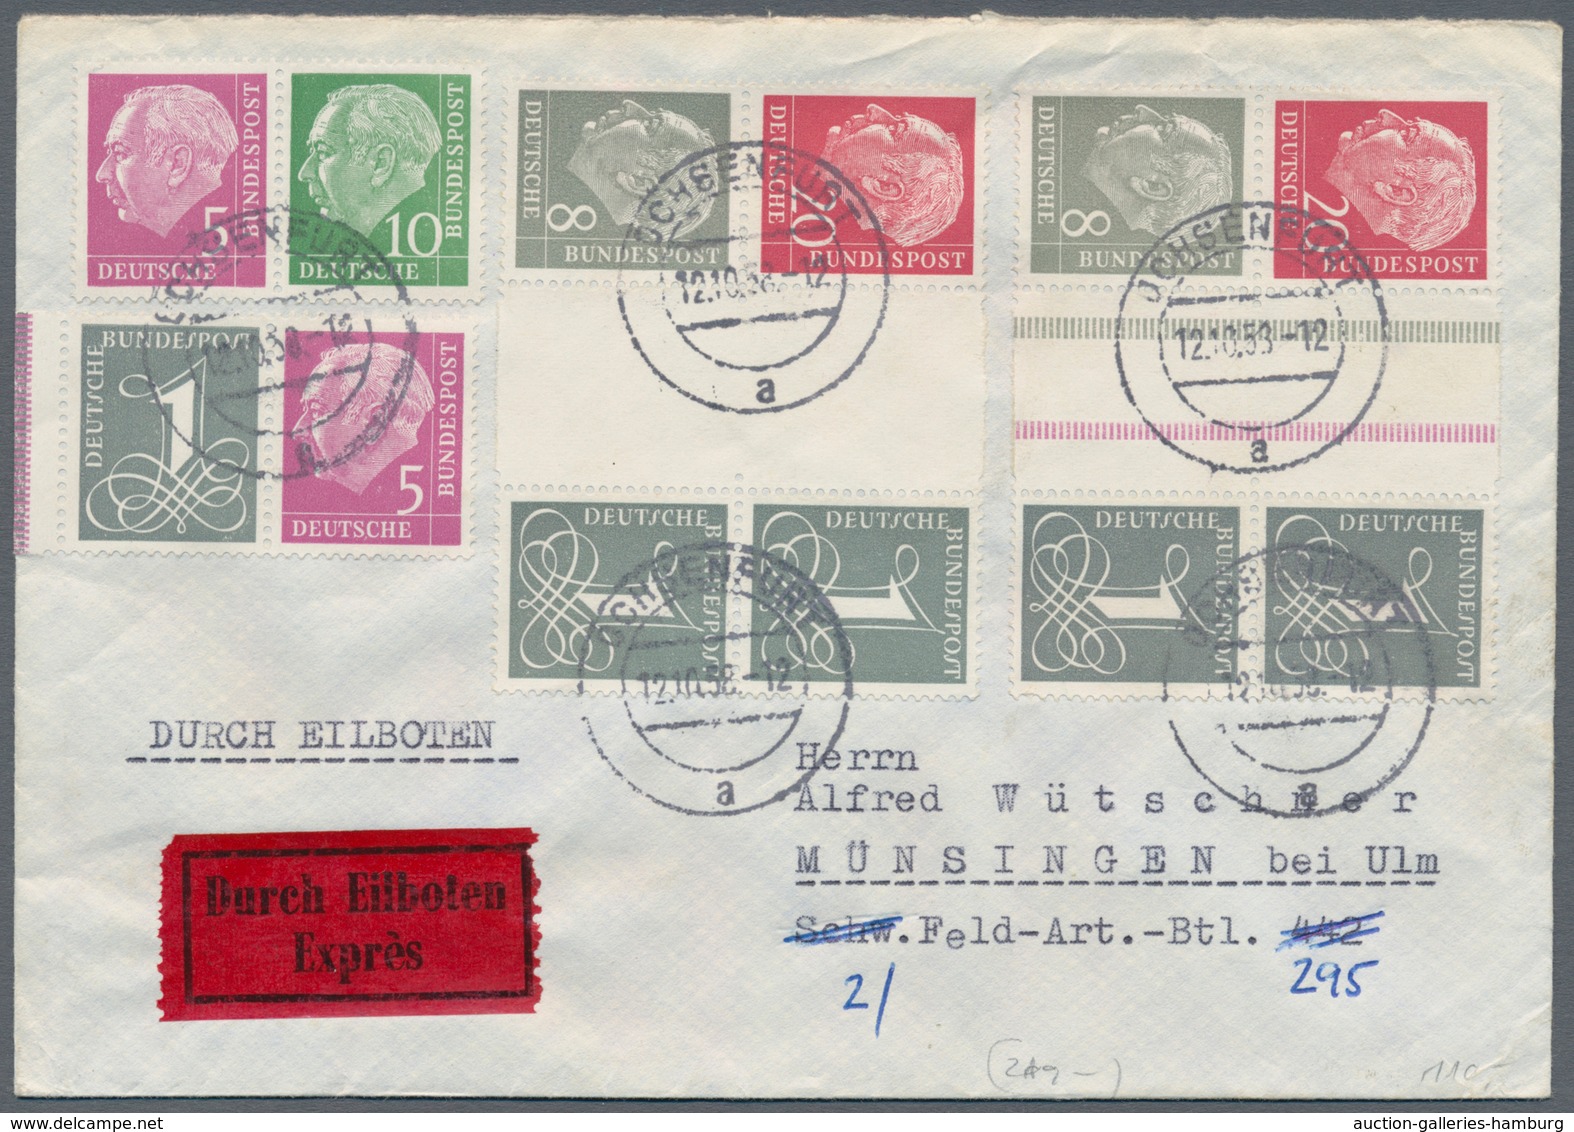 Bundesrepublik - Zusammendrucke: 1953/1959 Heuss stehendes Wasserzeichen, 7 Briefe in verschiedenen